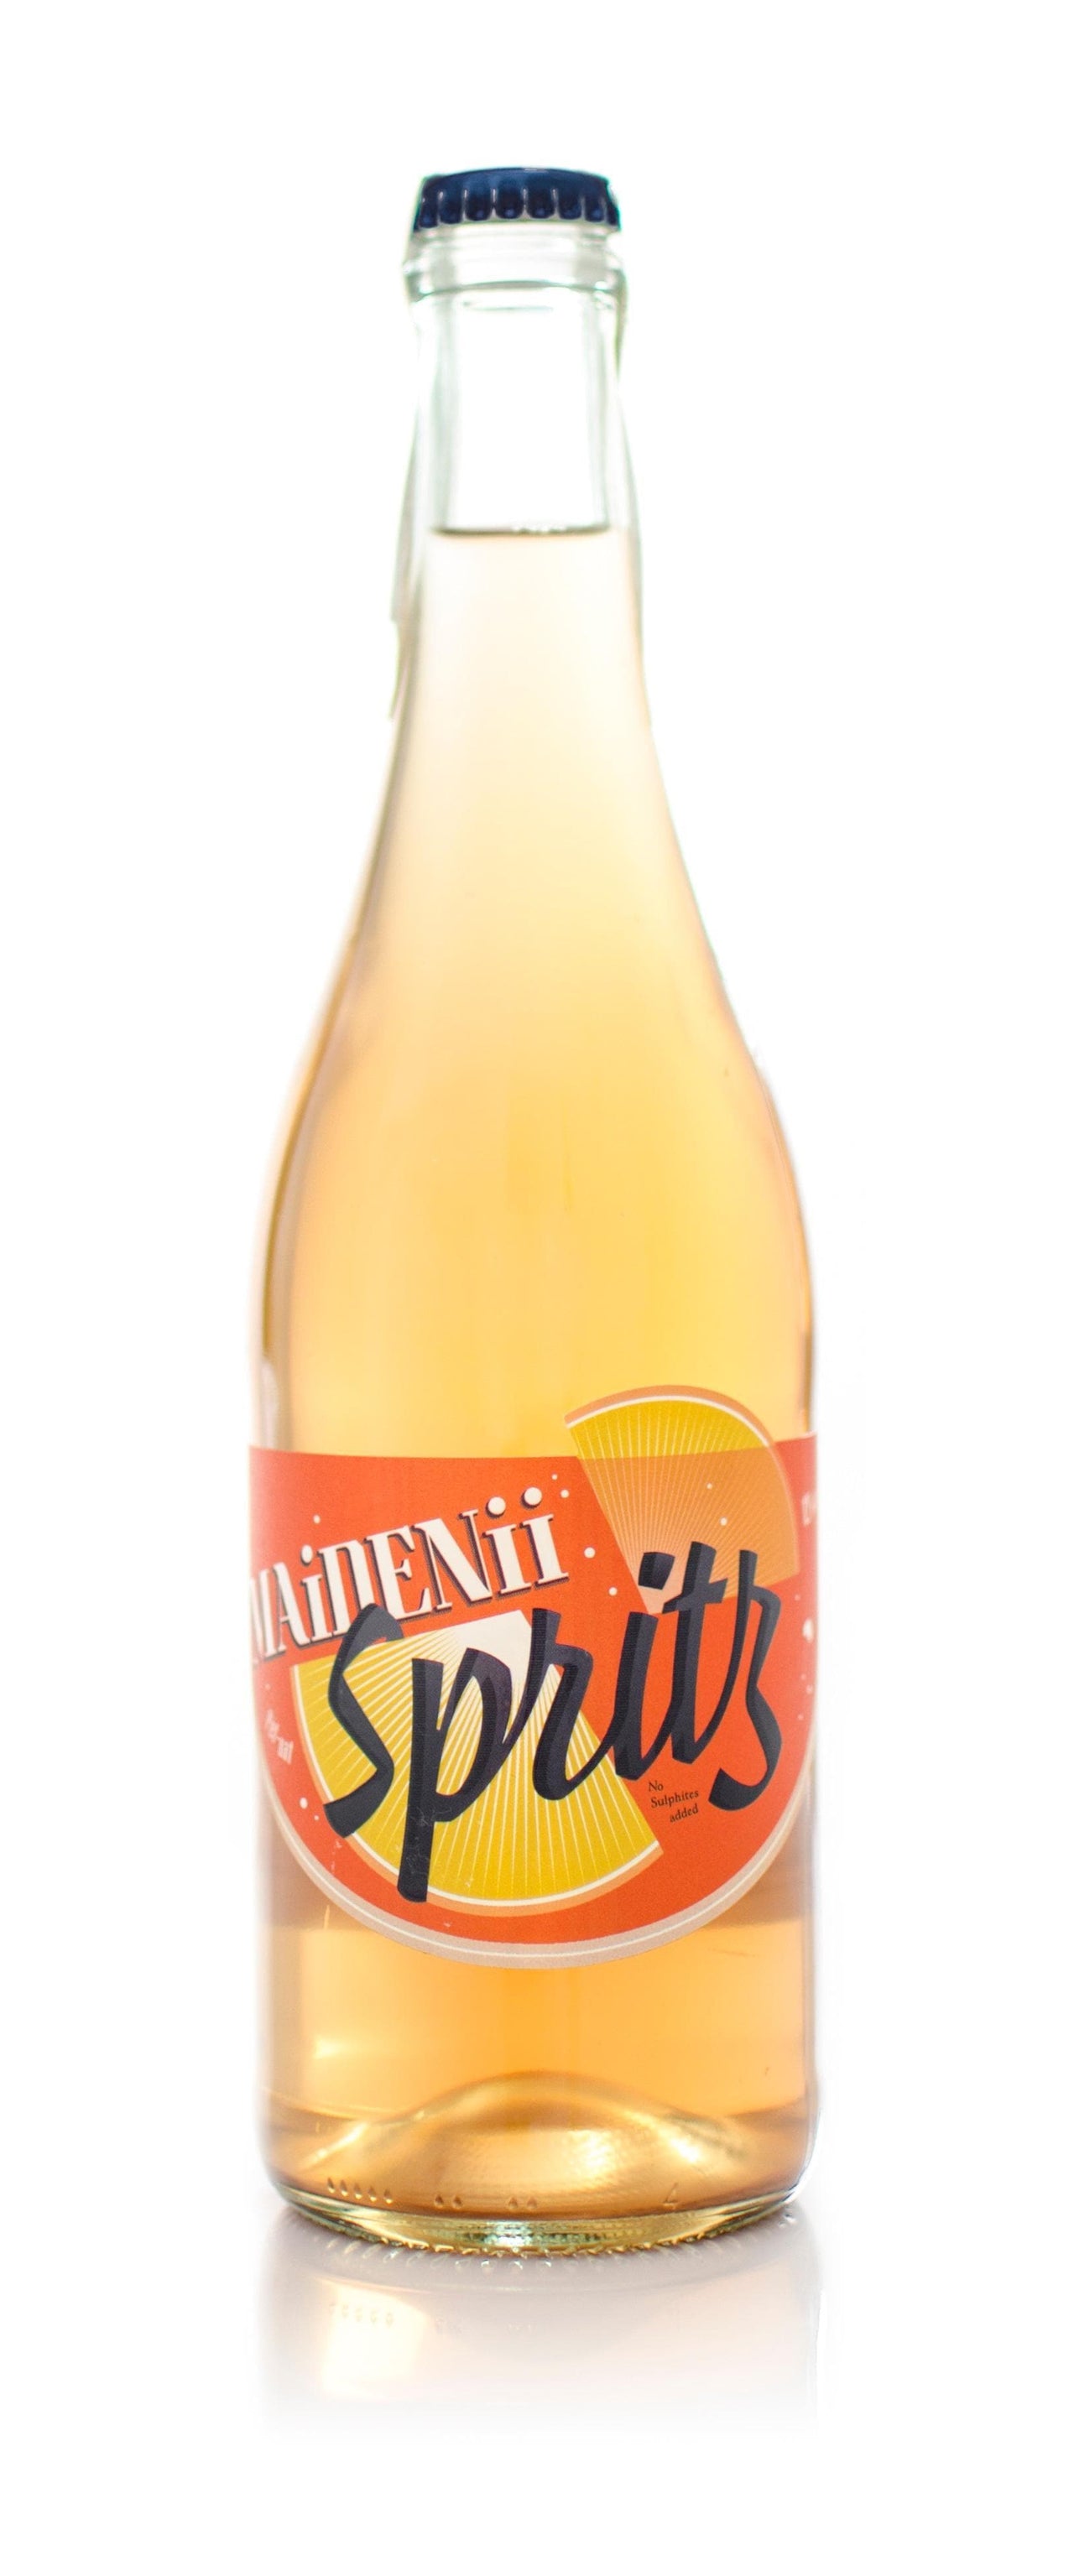 Maidenii Spritz 2017 11% 500ml | Liquor & Spirits | Shop online at Spirits of France